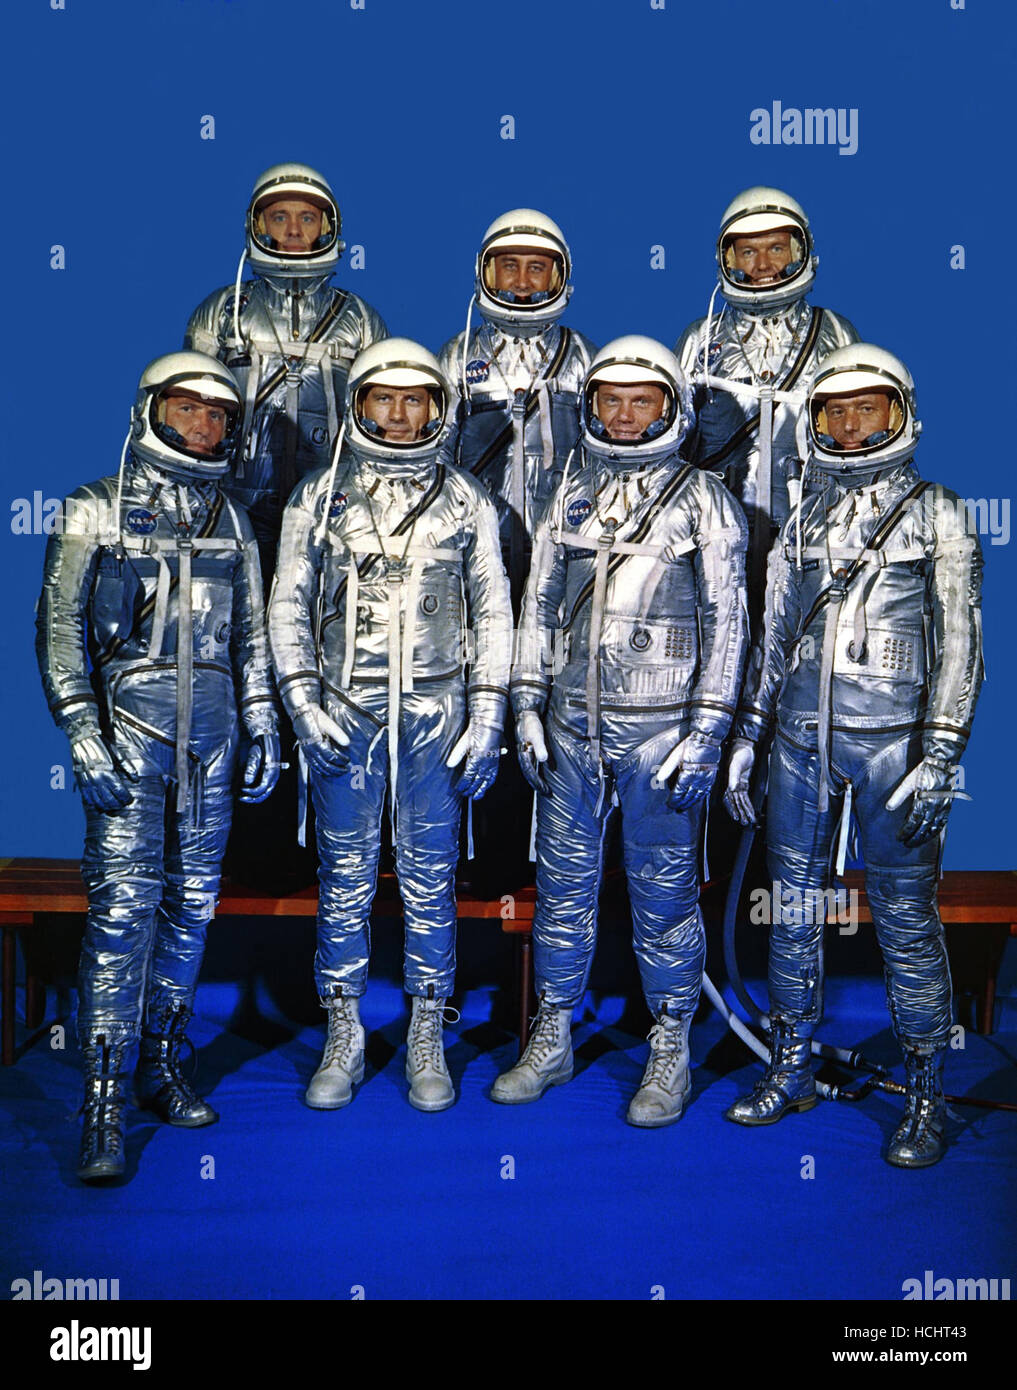 Original 7 Astronauten in Raumanzügen Quecksilber fotografiert am 3. Dezember 1962. Vordere Reihe, von links nach rechts, sind Walter M. Schirra Jr., Donald K. Slayton, John H. Glenn, Jr., und M. Scott Carpenter. Hintere Reihe, von links, sind Alan B. Shepard Jr., Virgil I.Grissom und L. Gordon Cooper Jr. EDITOR Hinweis: da dieses Foto gemacht wurde: Grissom starb am 27. Januar 1967, im Apollo 1/Saturn 204 Feuer in Cape Kennedy, Florida; Slayton starb 13. Juni 1993 in League City, Texas, an den Folgen eines Hirntumors. Shepard starb am 21. Juli 1998. Cooper starb 4. Oktober 2004. Schirra starb am 2. Mai 2007 Astr Stockfoto